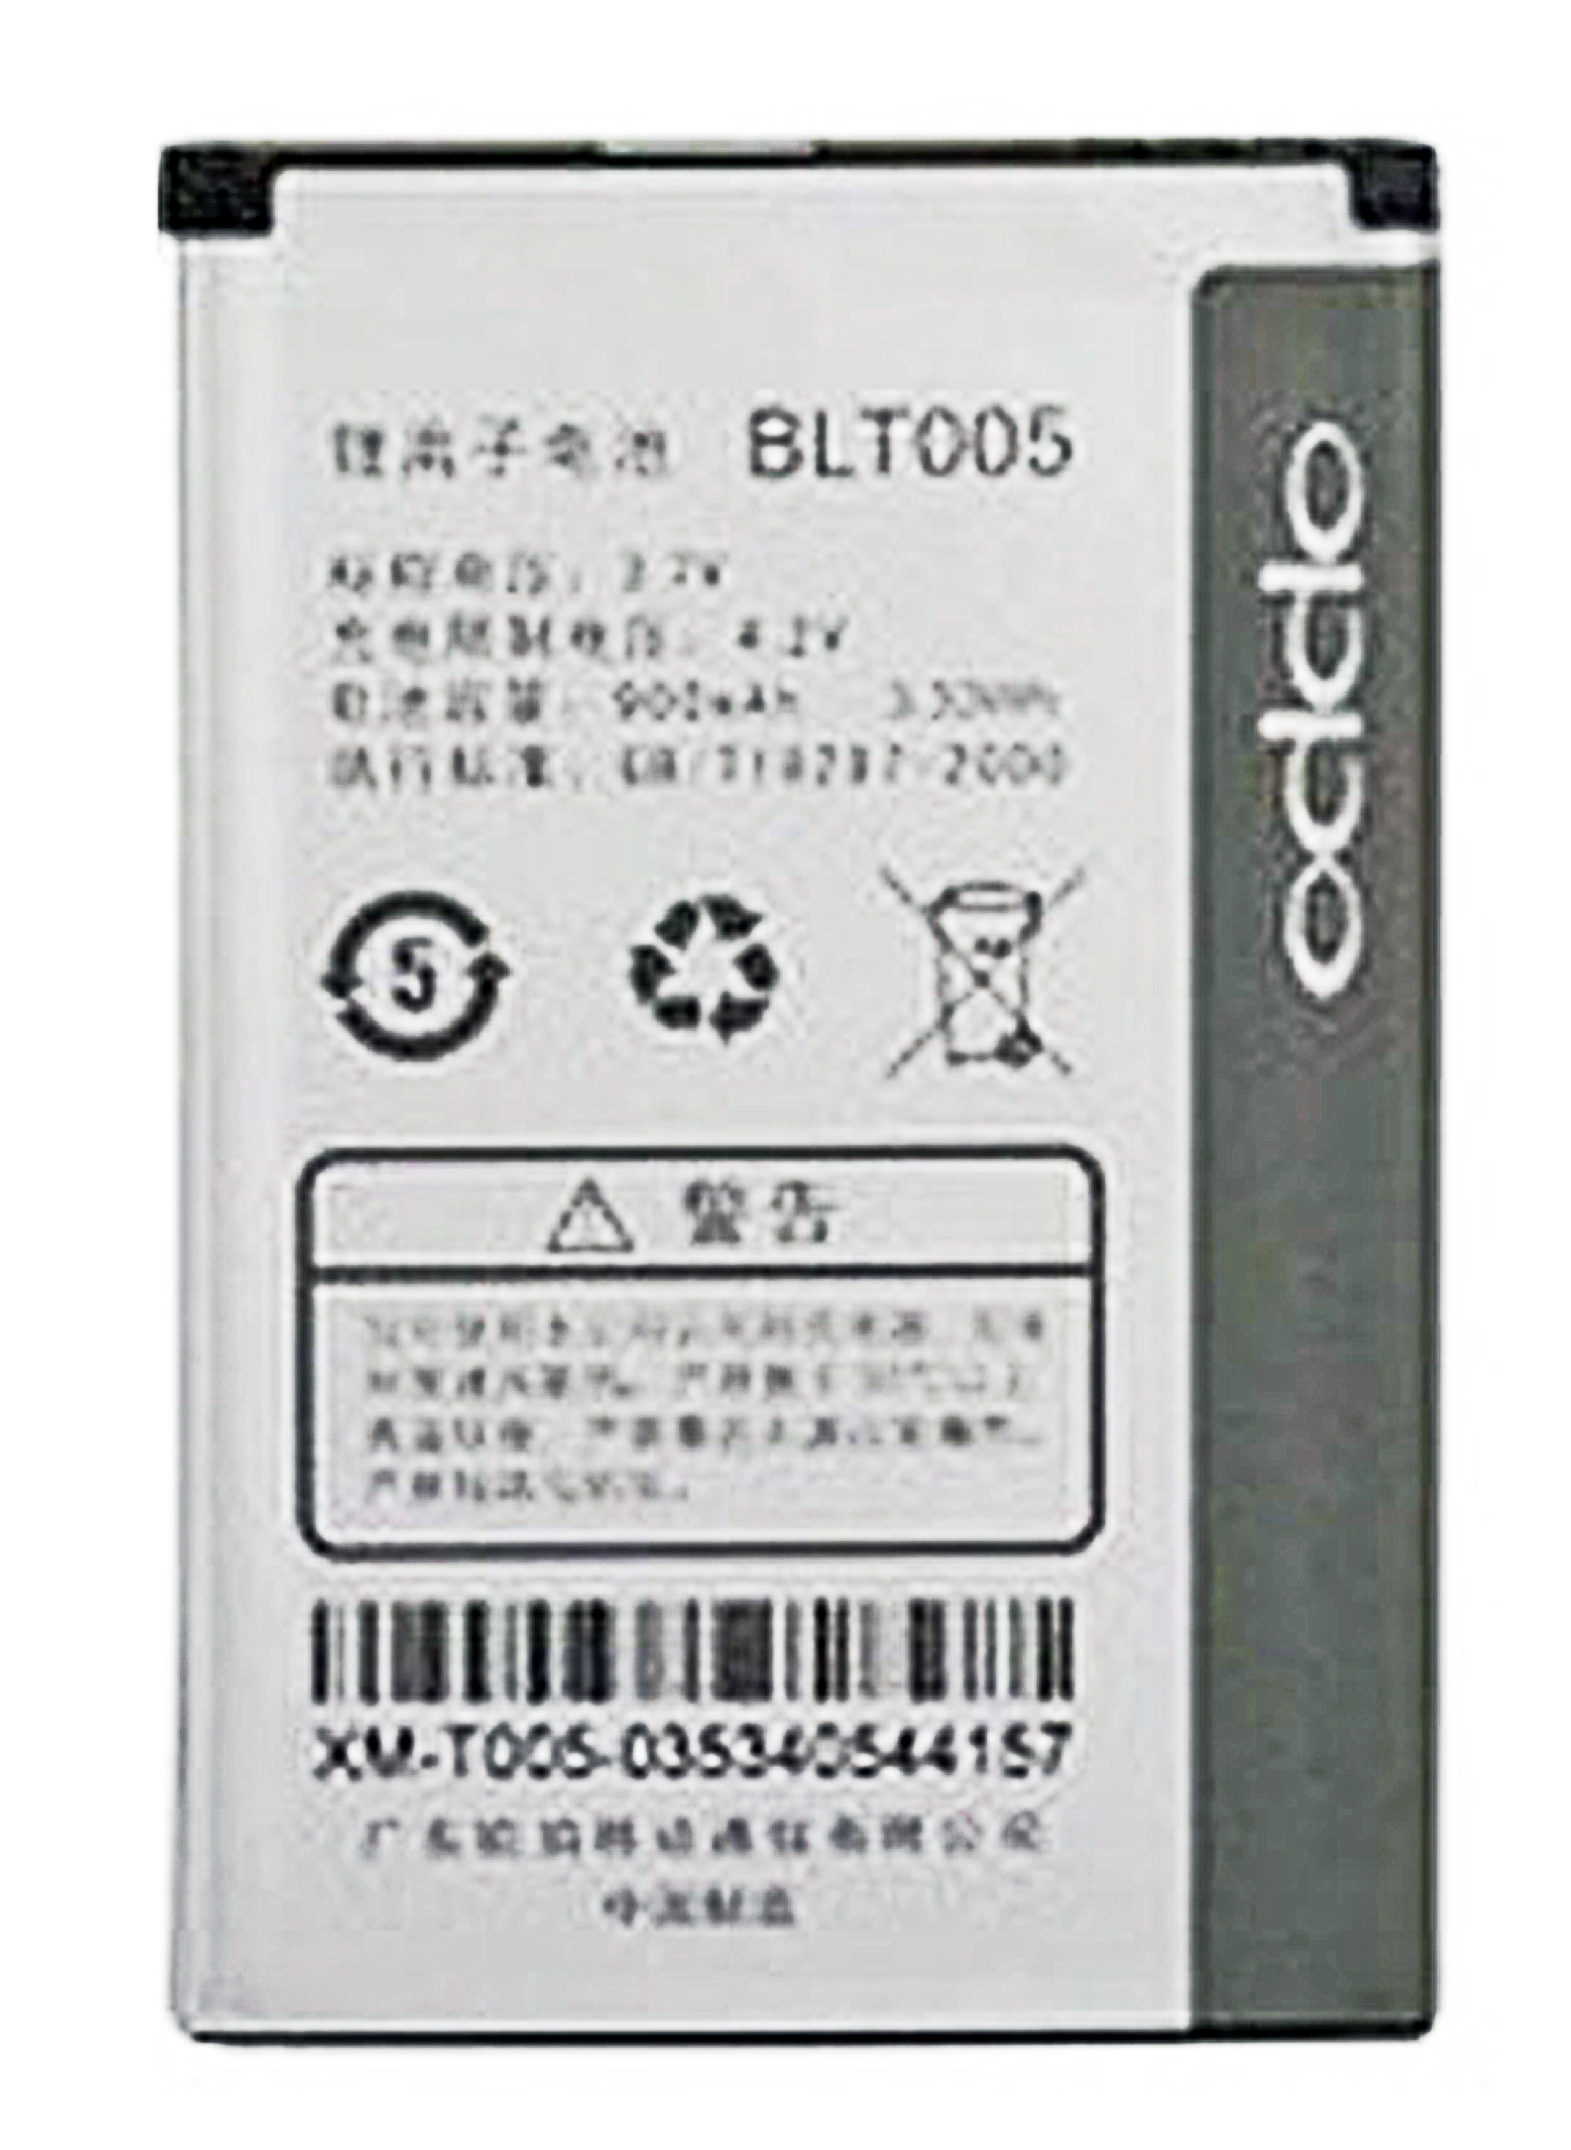 Pin Oppo BLT005